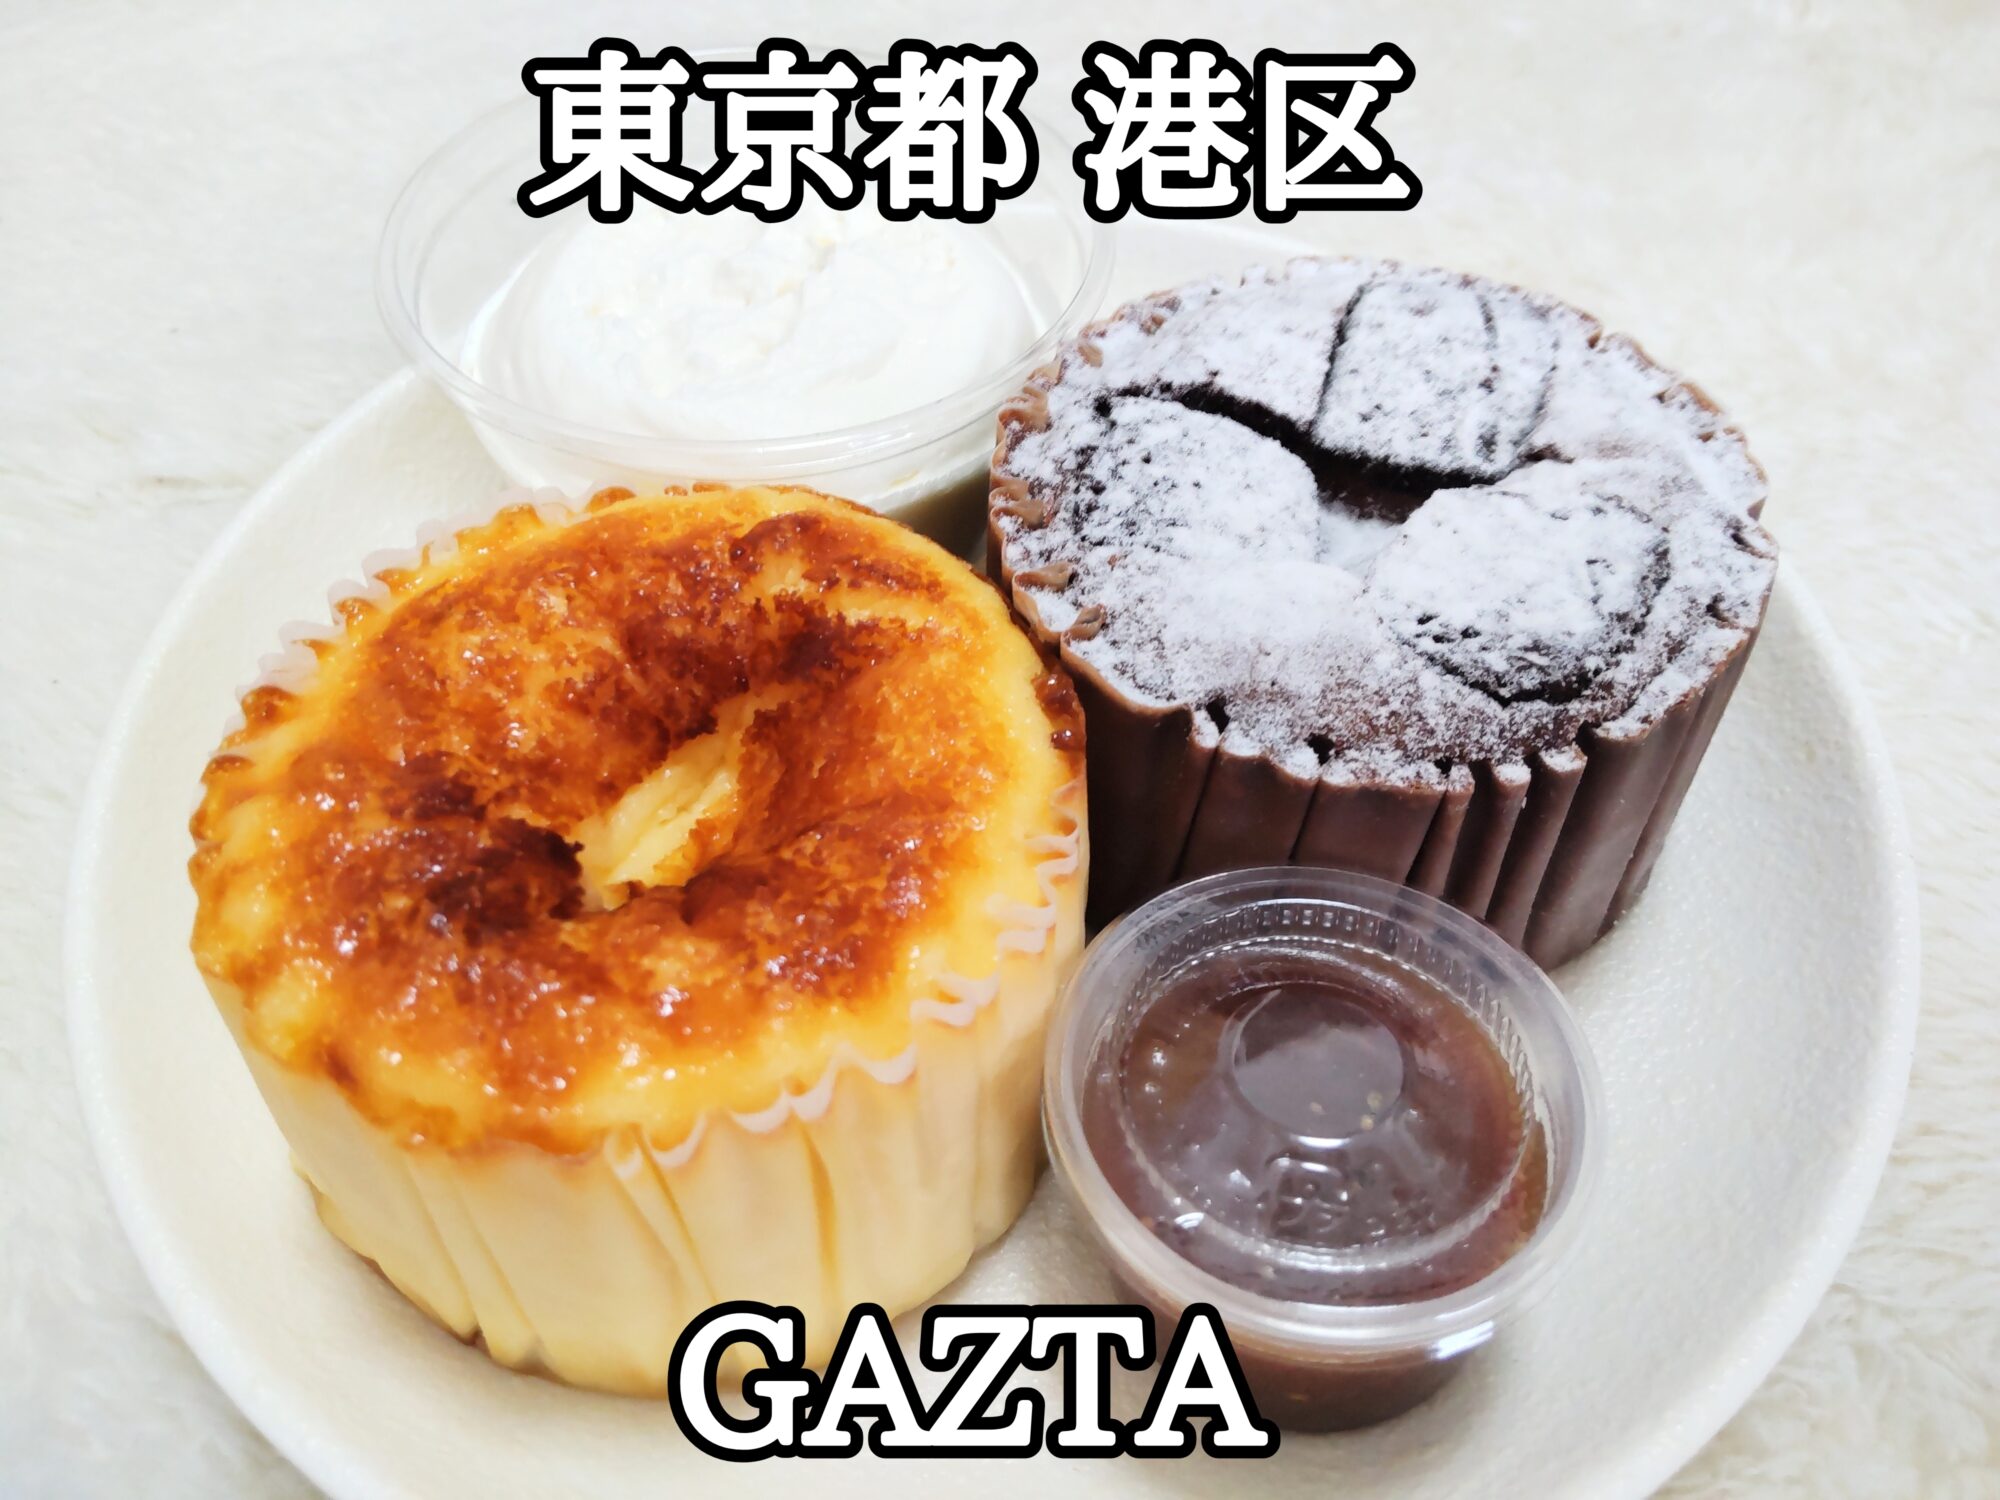 【東京都】【港区】「GAZTA」チーズケーキ好きなら絶対に1度は食べるべきヤバうま過ぎるチーズケーキ 1 テイクアウト編